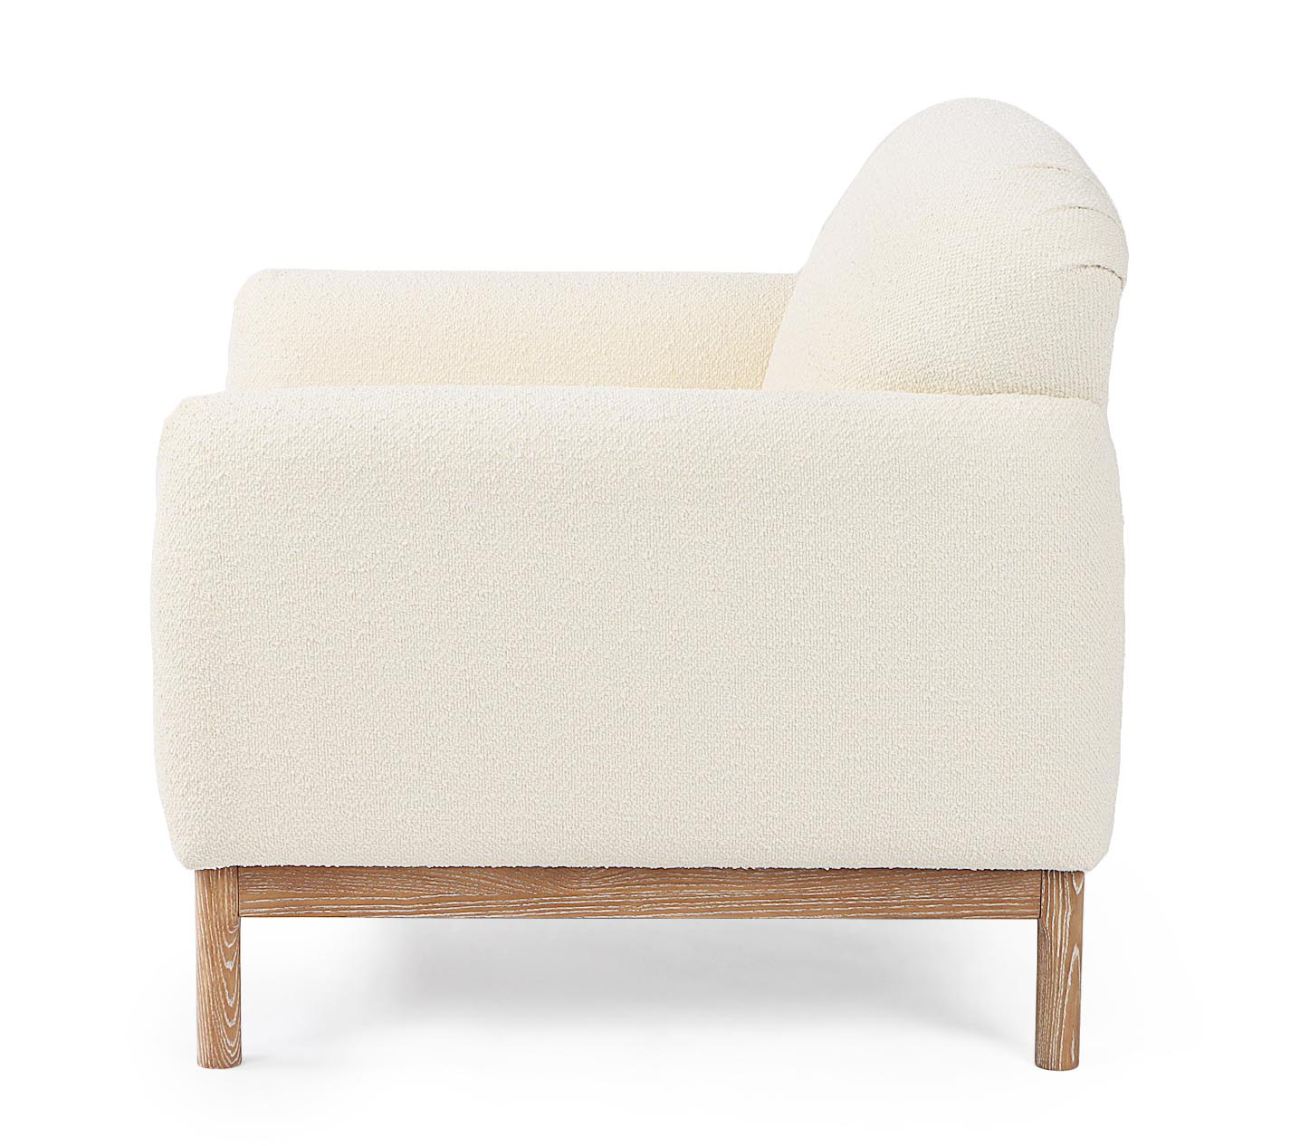 Der Sessel Detroit überzeugt mit seinem modernen Stil. Gefertigt wurde er aus Bouclè-Stoff, welcher einen Creme Farbton besitzt. Das Gestell ist aus Eschenholz und hat eine natürliche Farbe. Der Sessel verfügt über eine Armlehne.